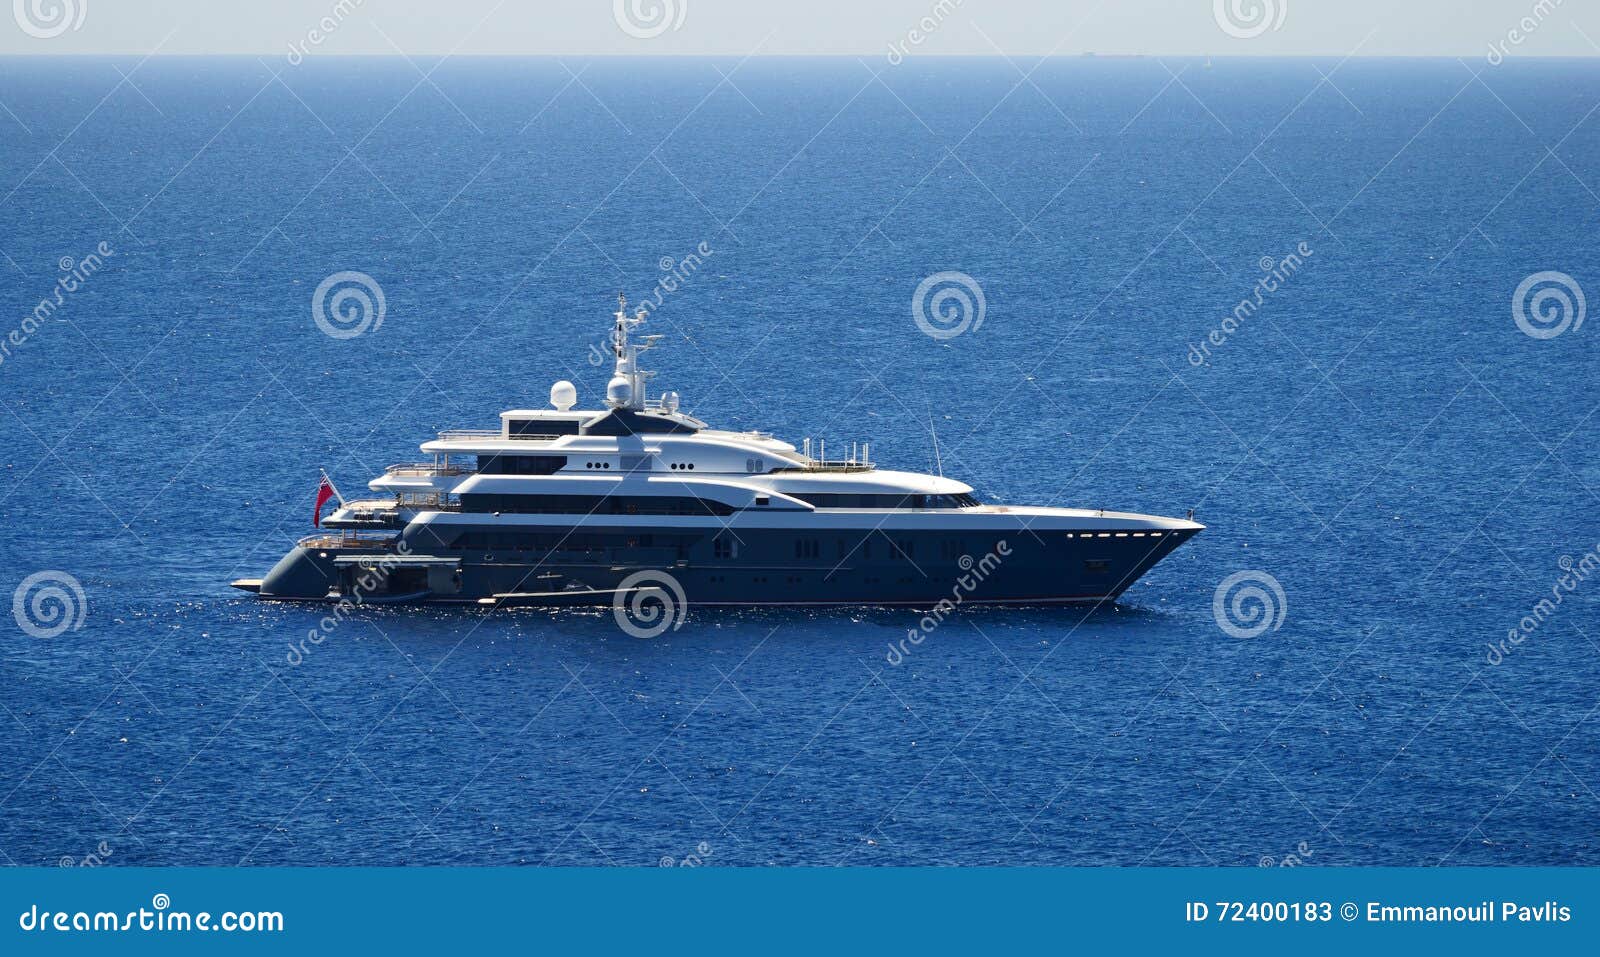 luxury mega-yacht